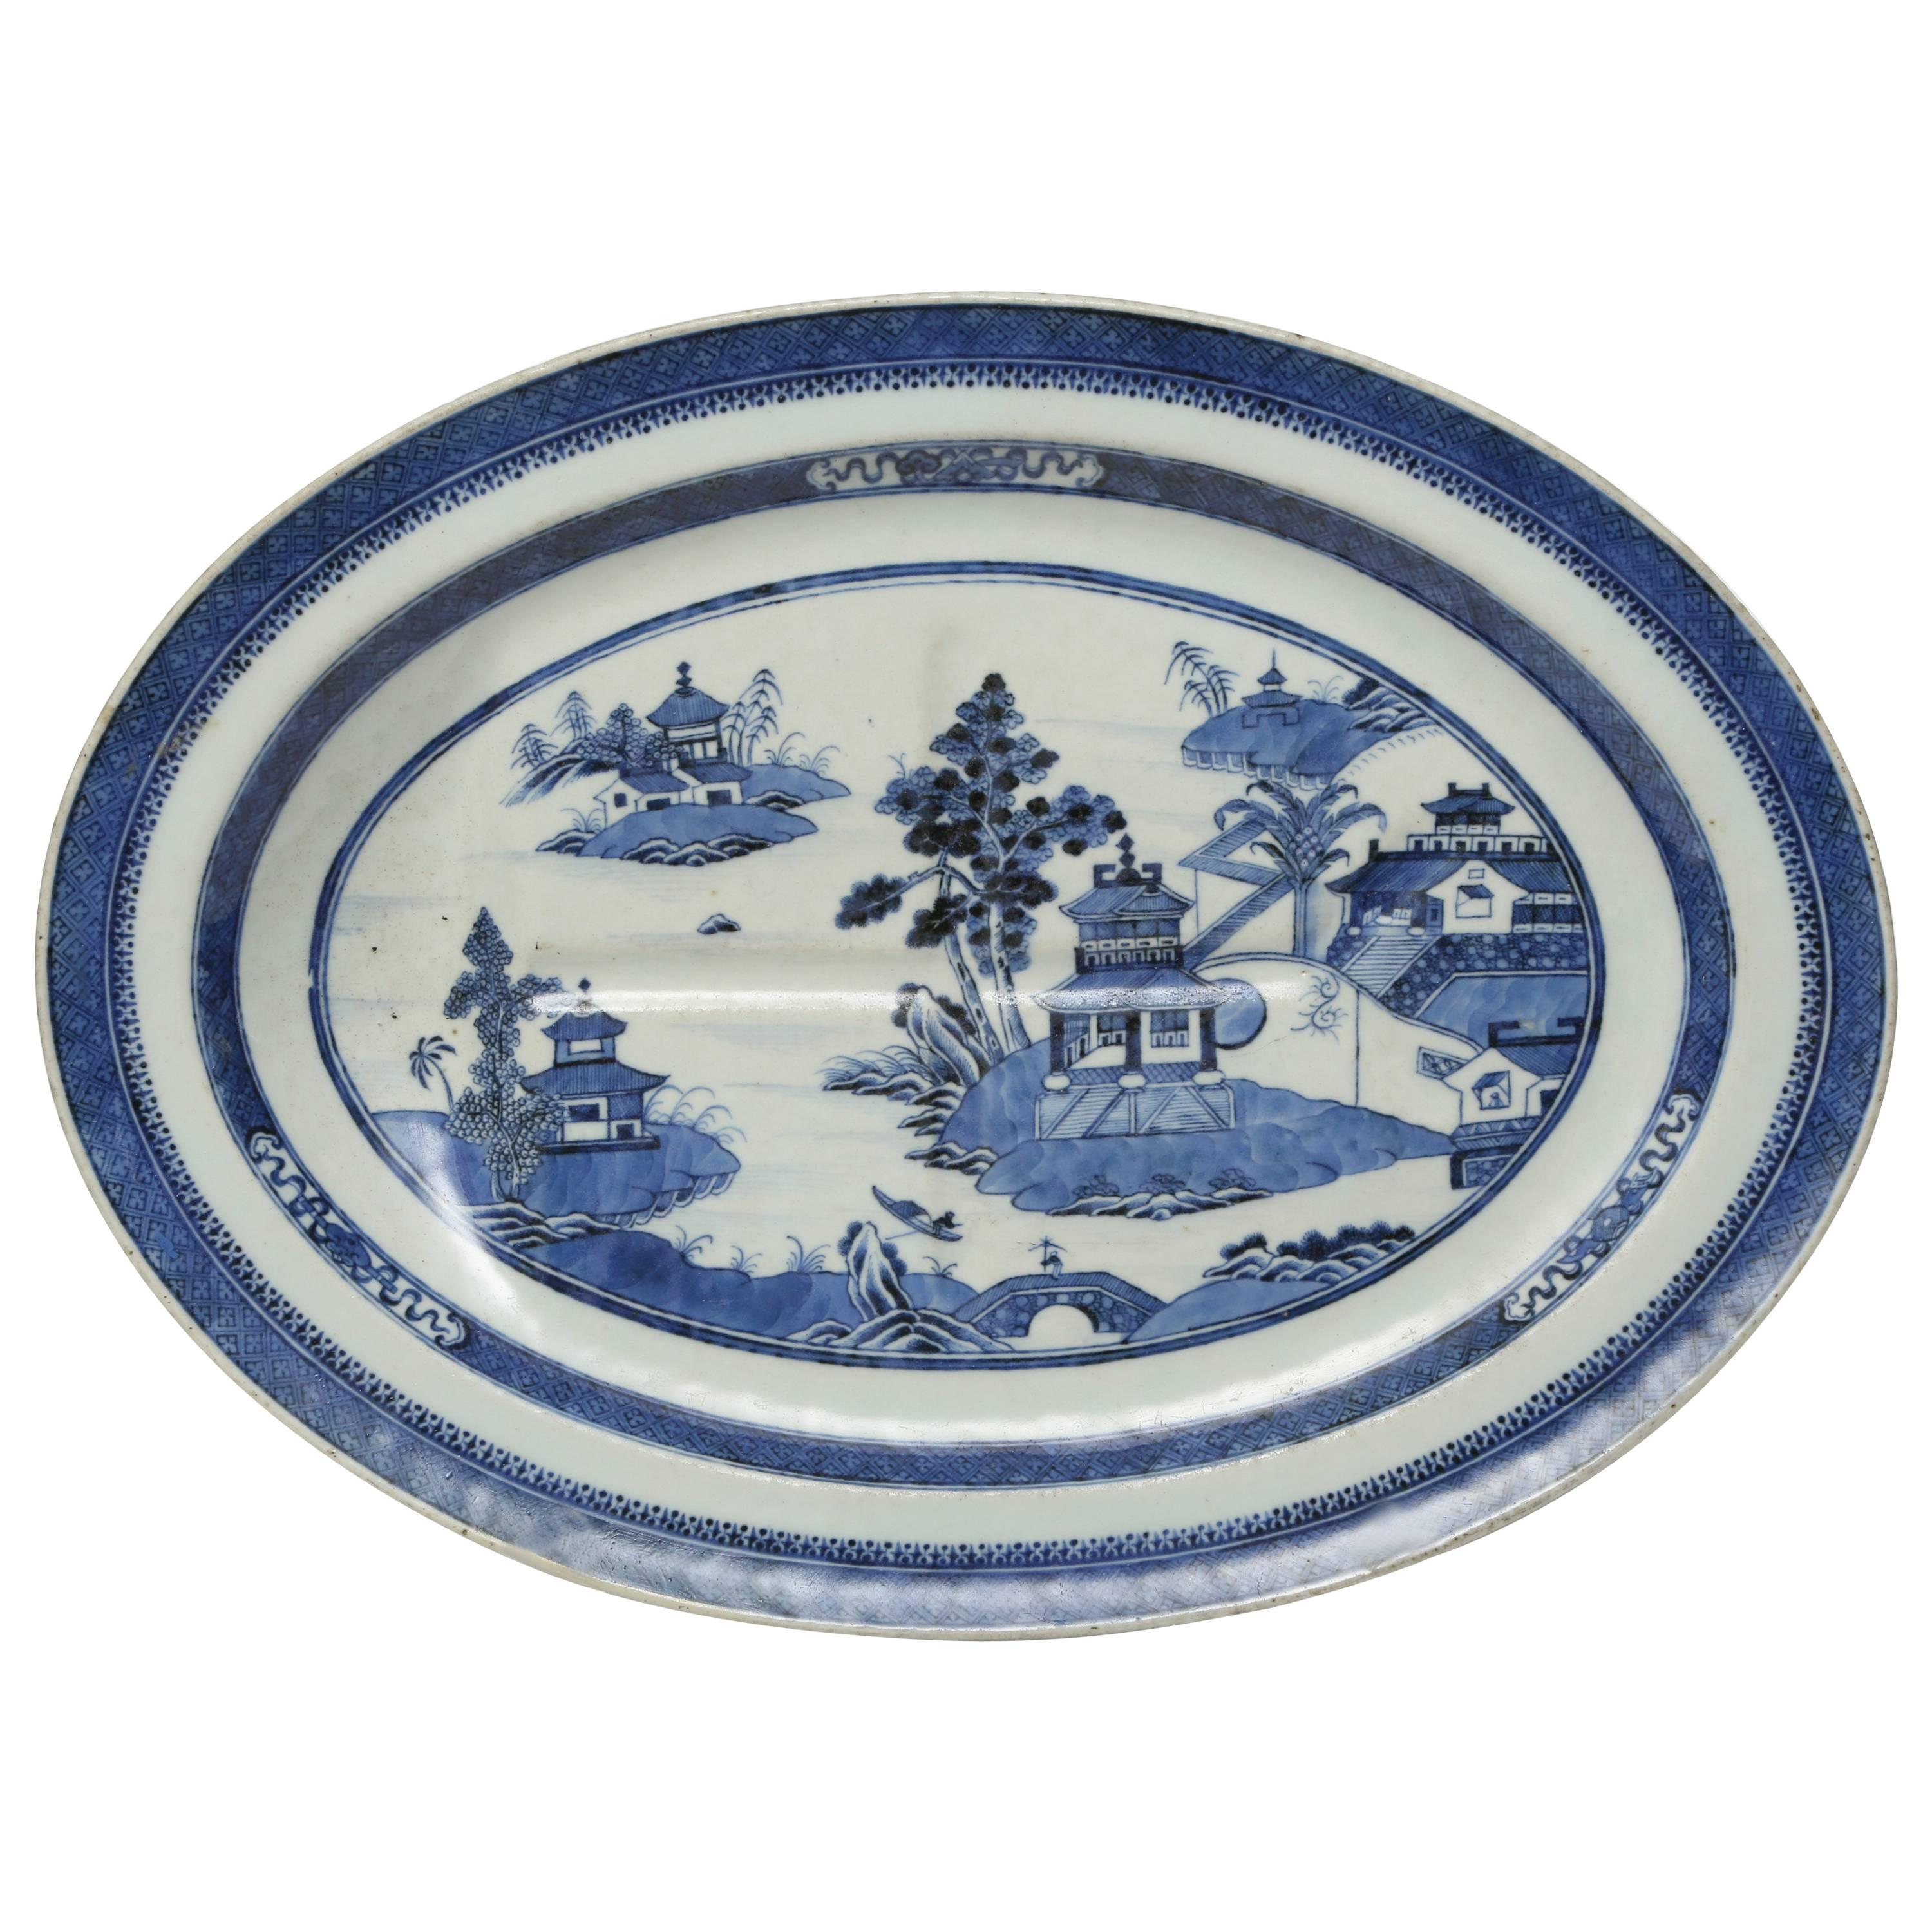  Plat ovale en porcelaine d'exportation chinoise avec puits et arbres dans le motif de Nanking